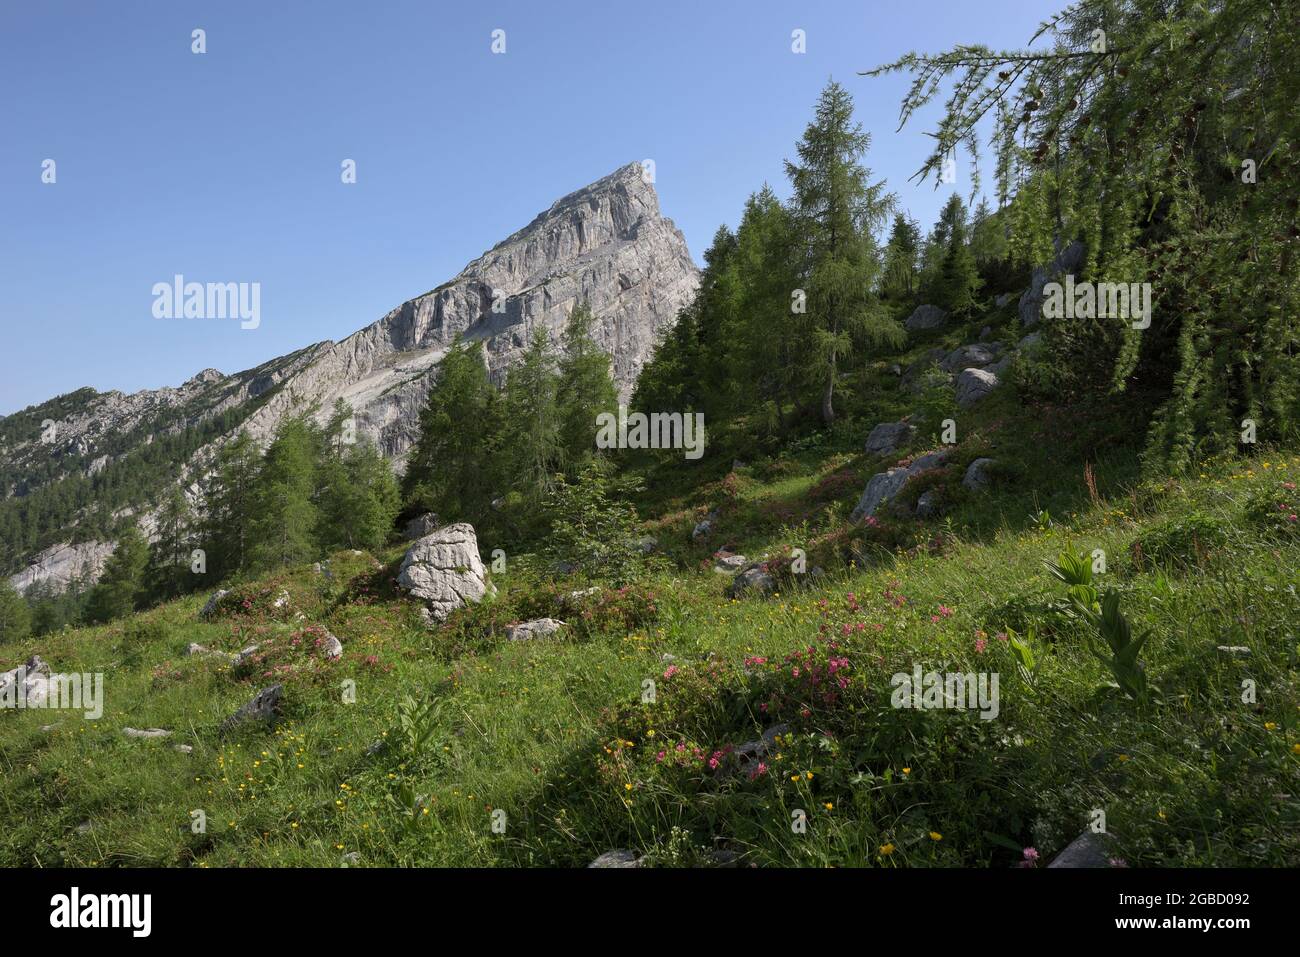 Wildblumenwiese und Watzmannfrau, kleiner Watzmann, Berg im Hintergrund am späten Nachmittag, Ramsau, Berchtesgaden, Bayern, Deutschland Stockfoto